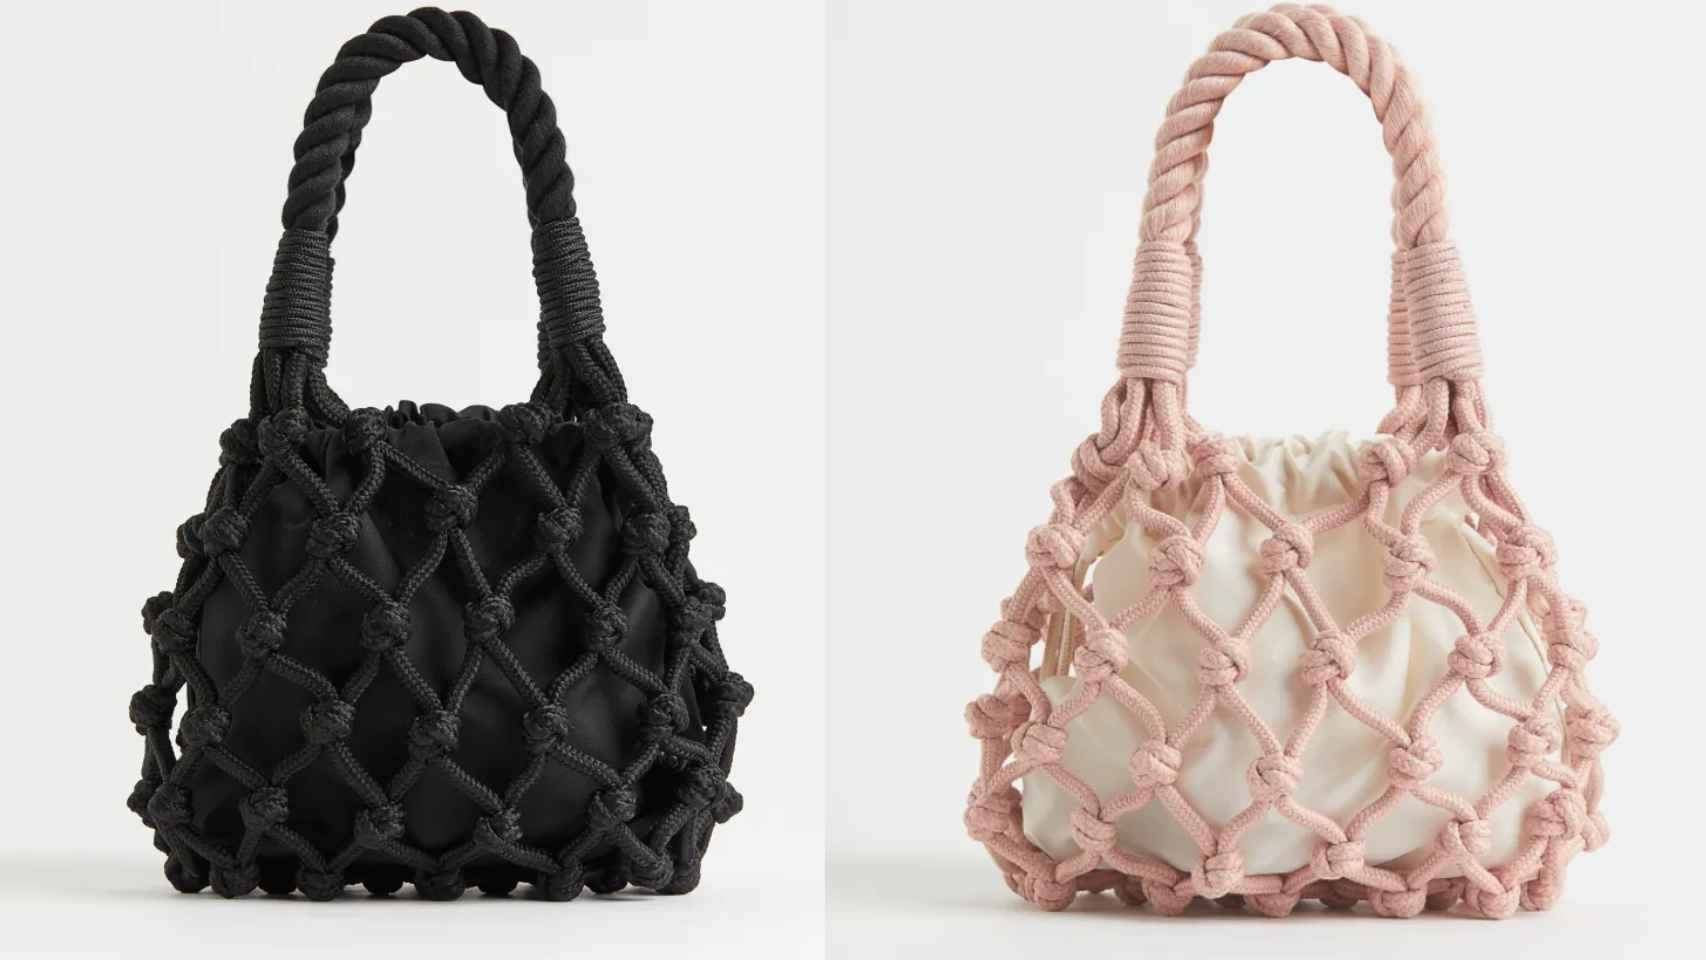 El bolso se puede comprar en dos colores, negro y rosa.